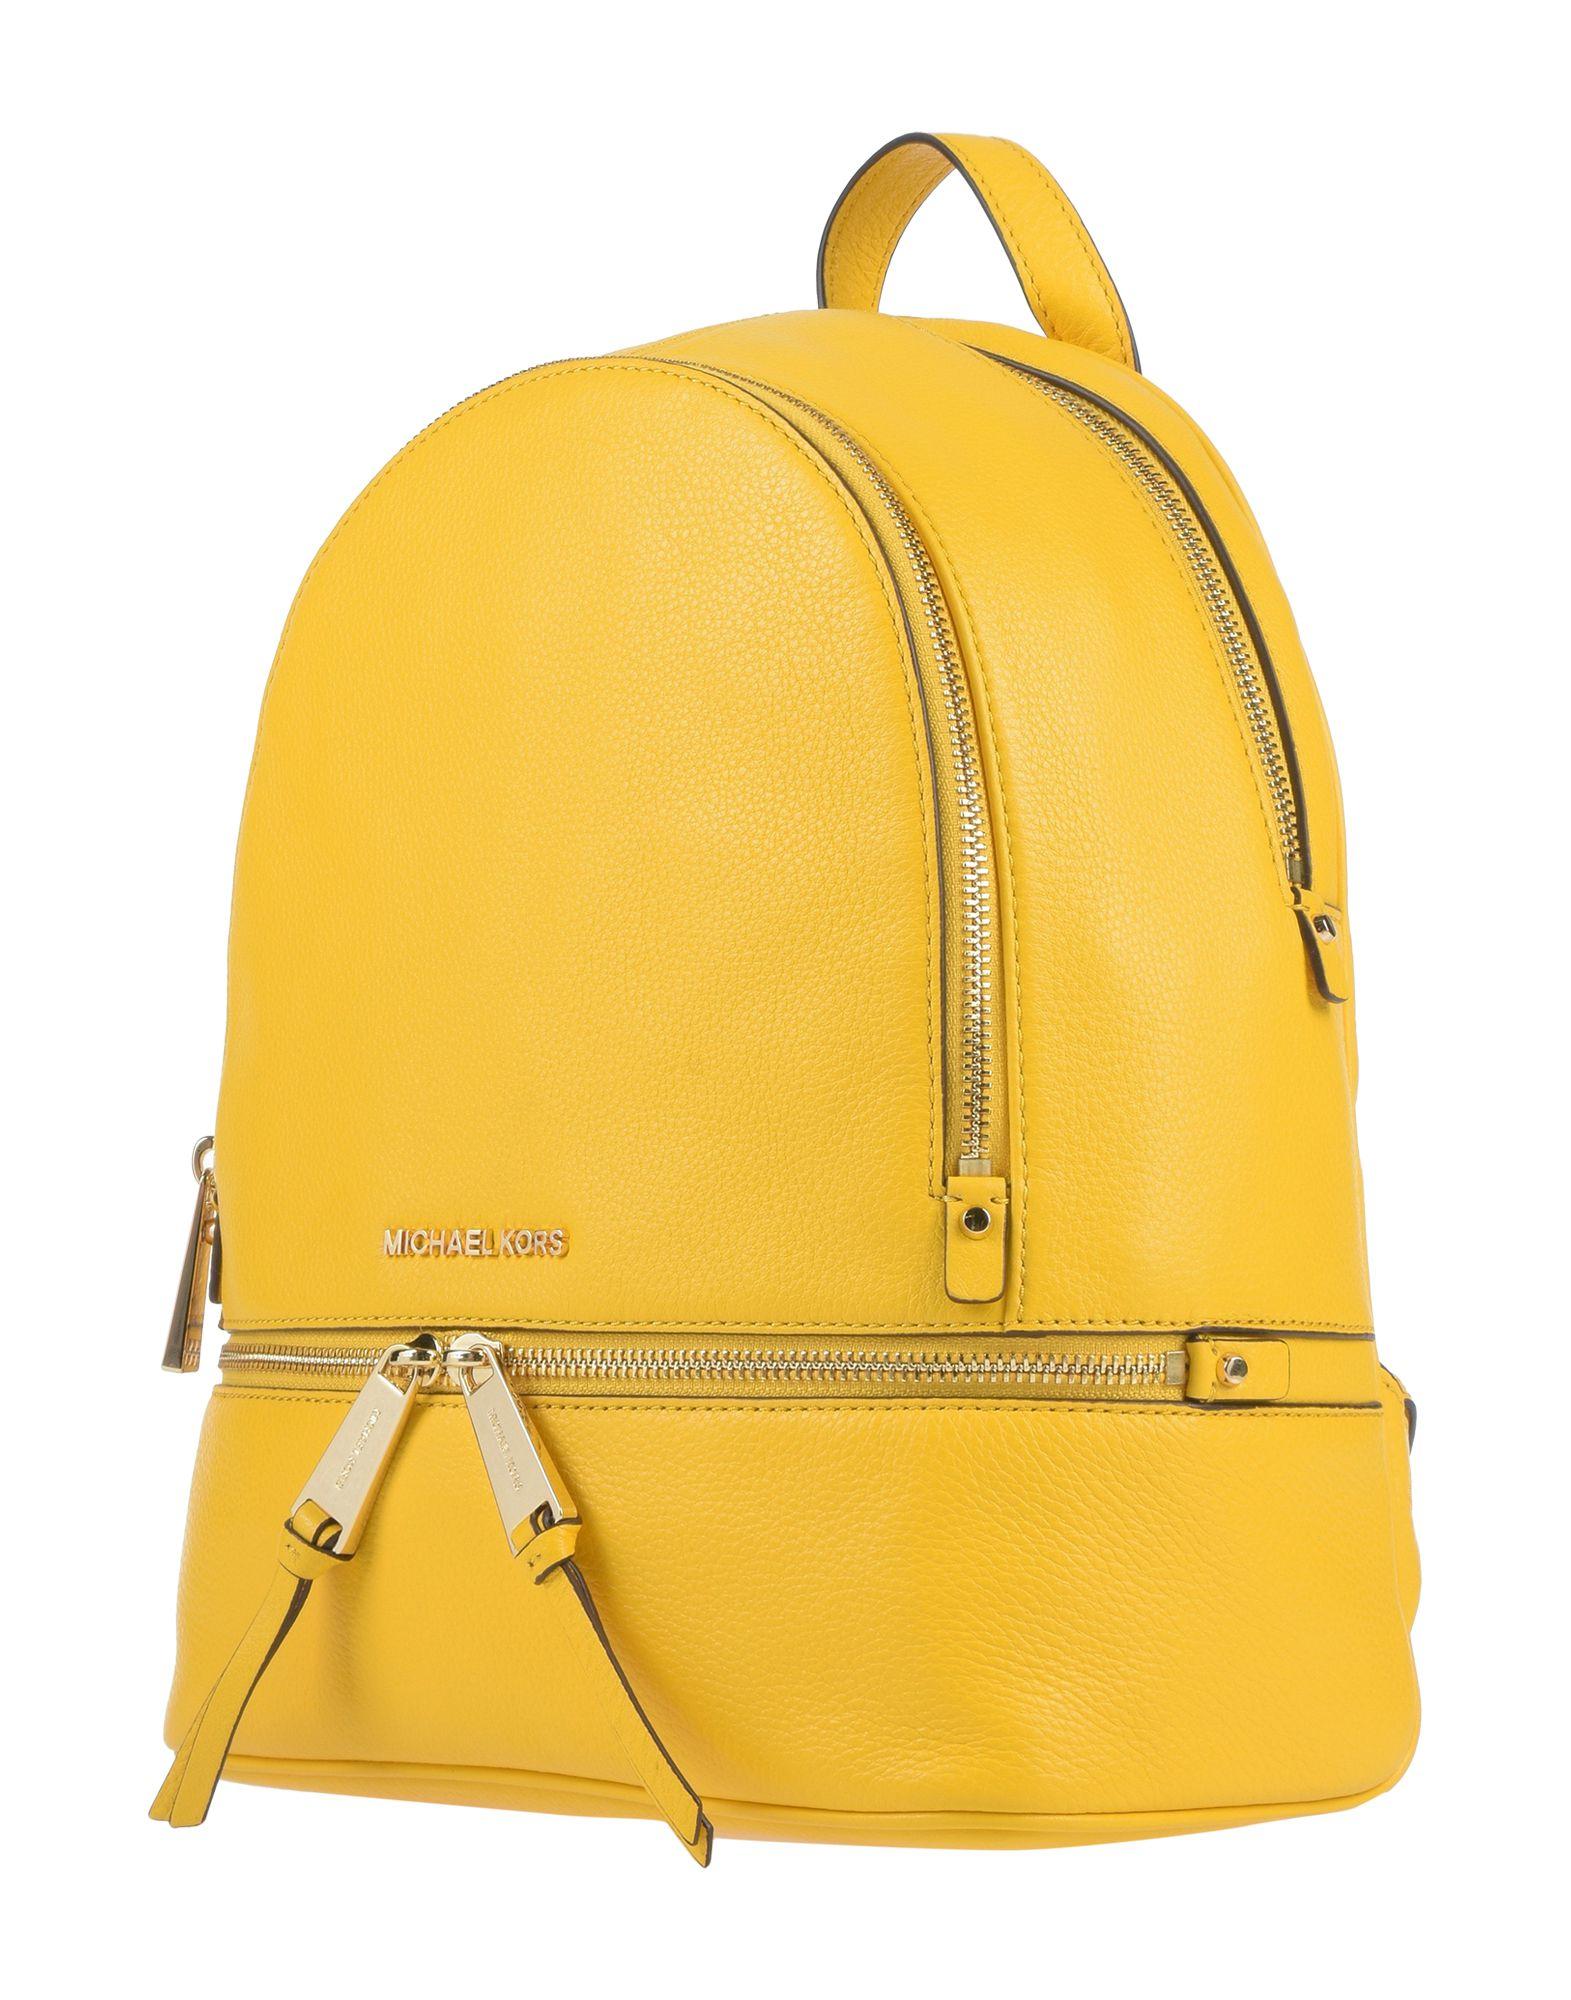 michael kors yellow backpack